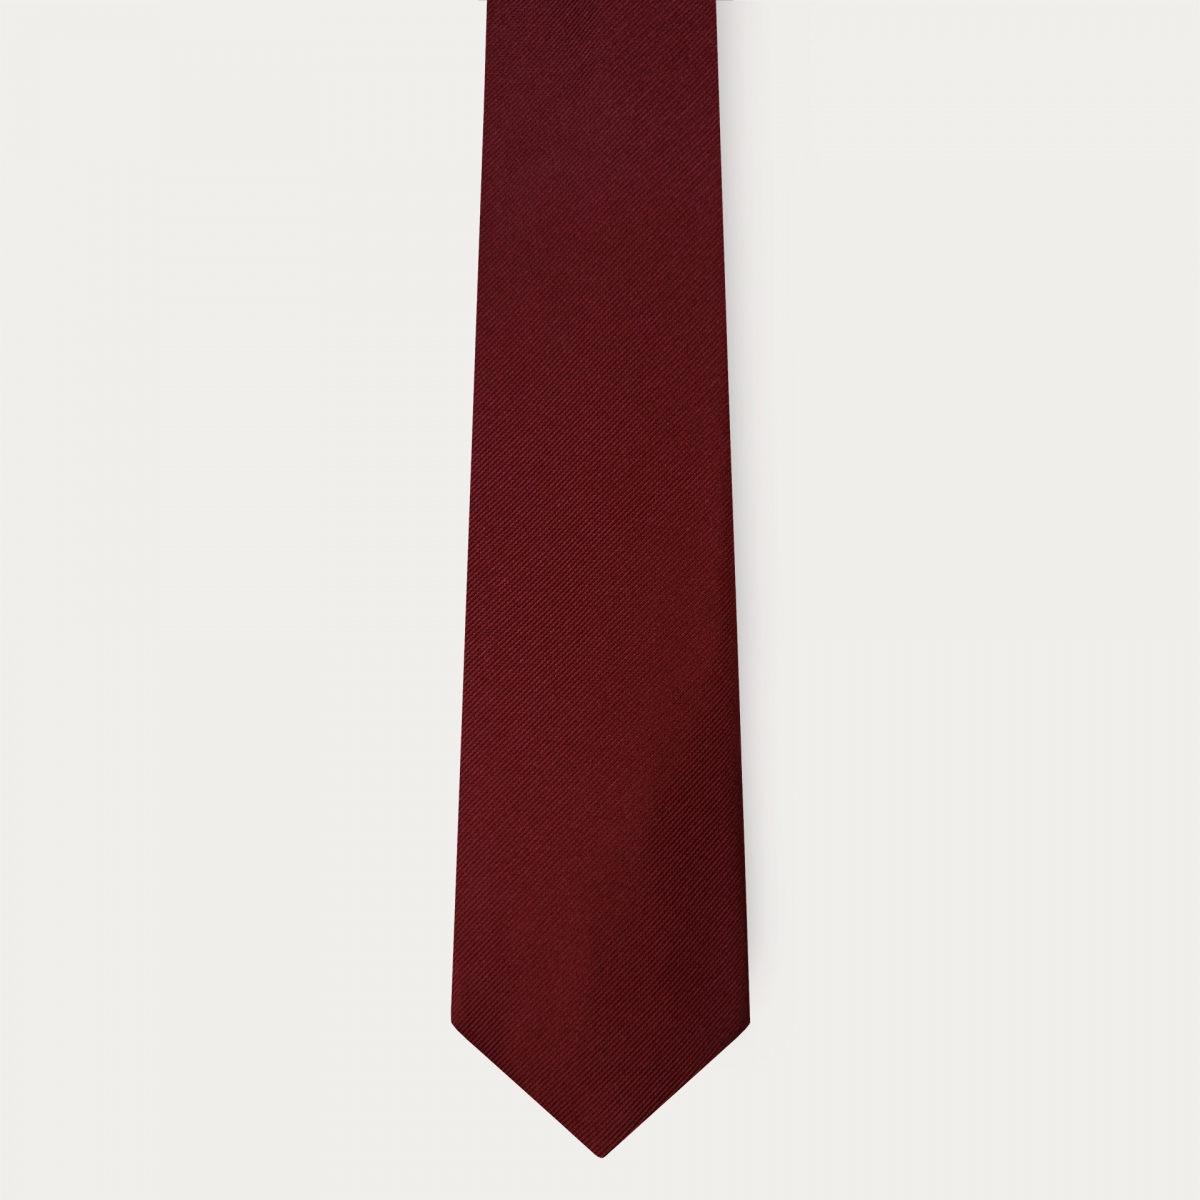 Cravate bordeaux en soie de 8 cm de large